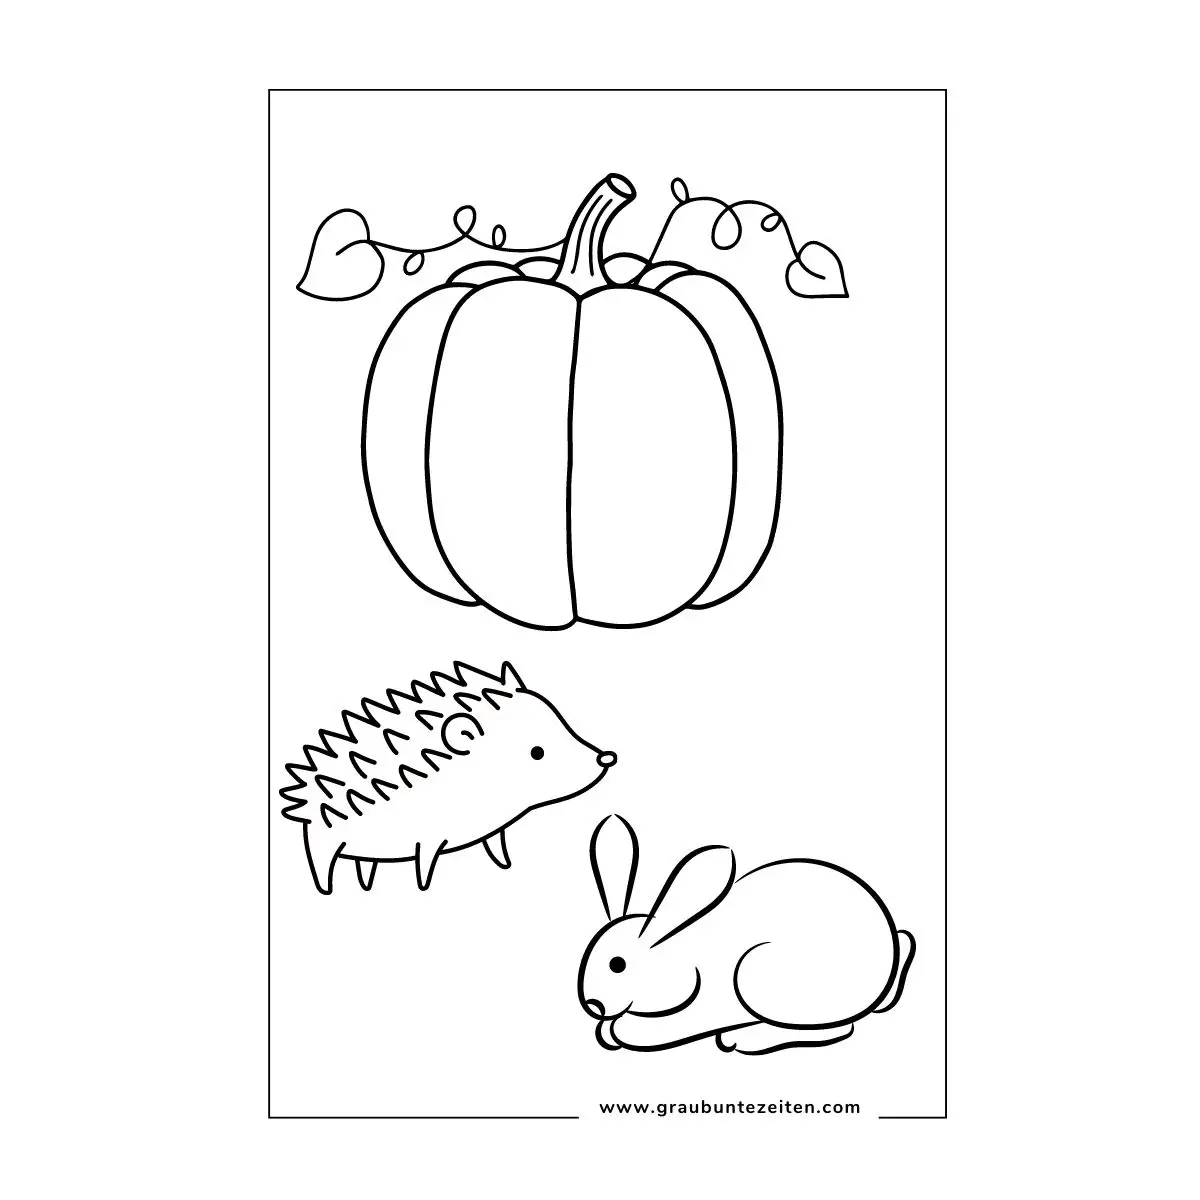 Ausmalbild Herbst mit Igel und Hase die vor einem Kürbis sitzen.